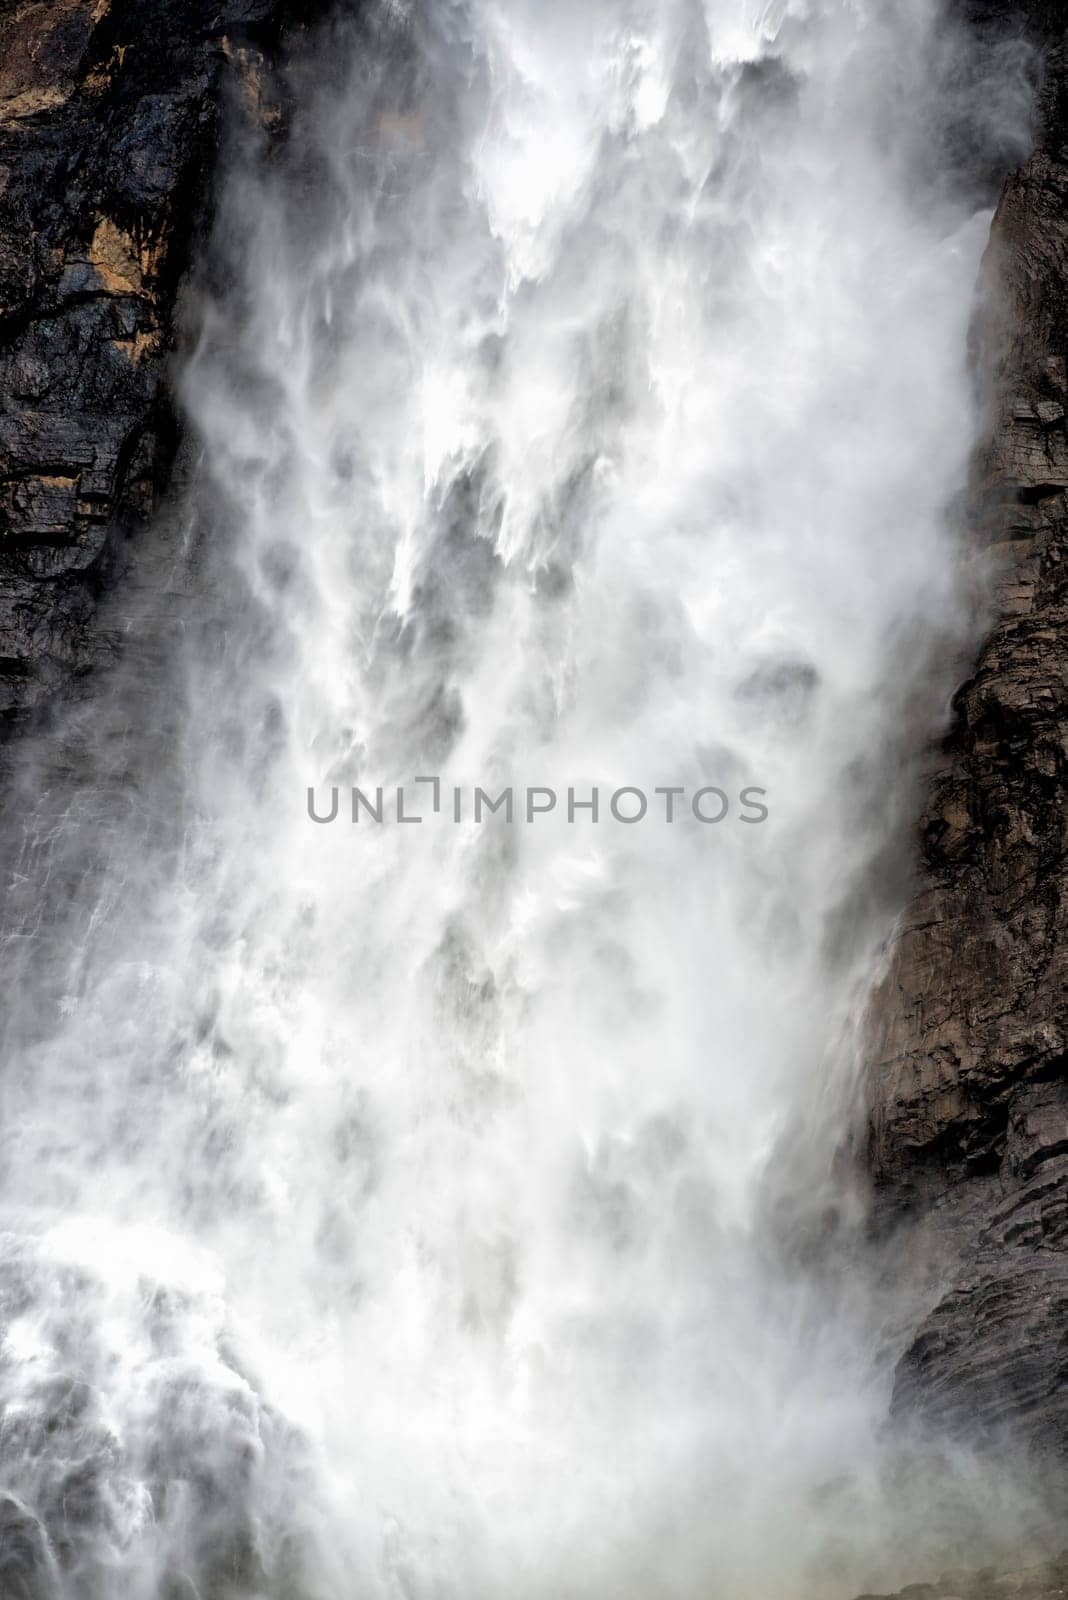 Takkakaw Falls by AndreaIzzotti